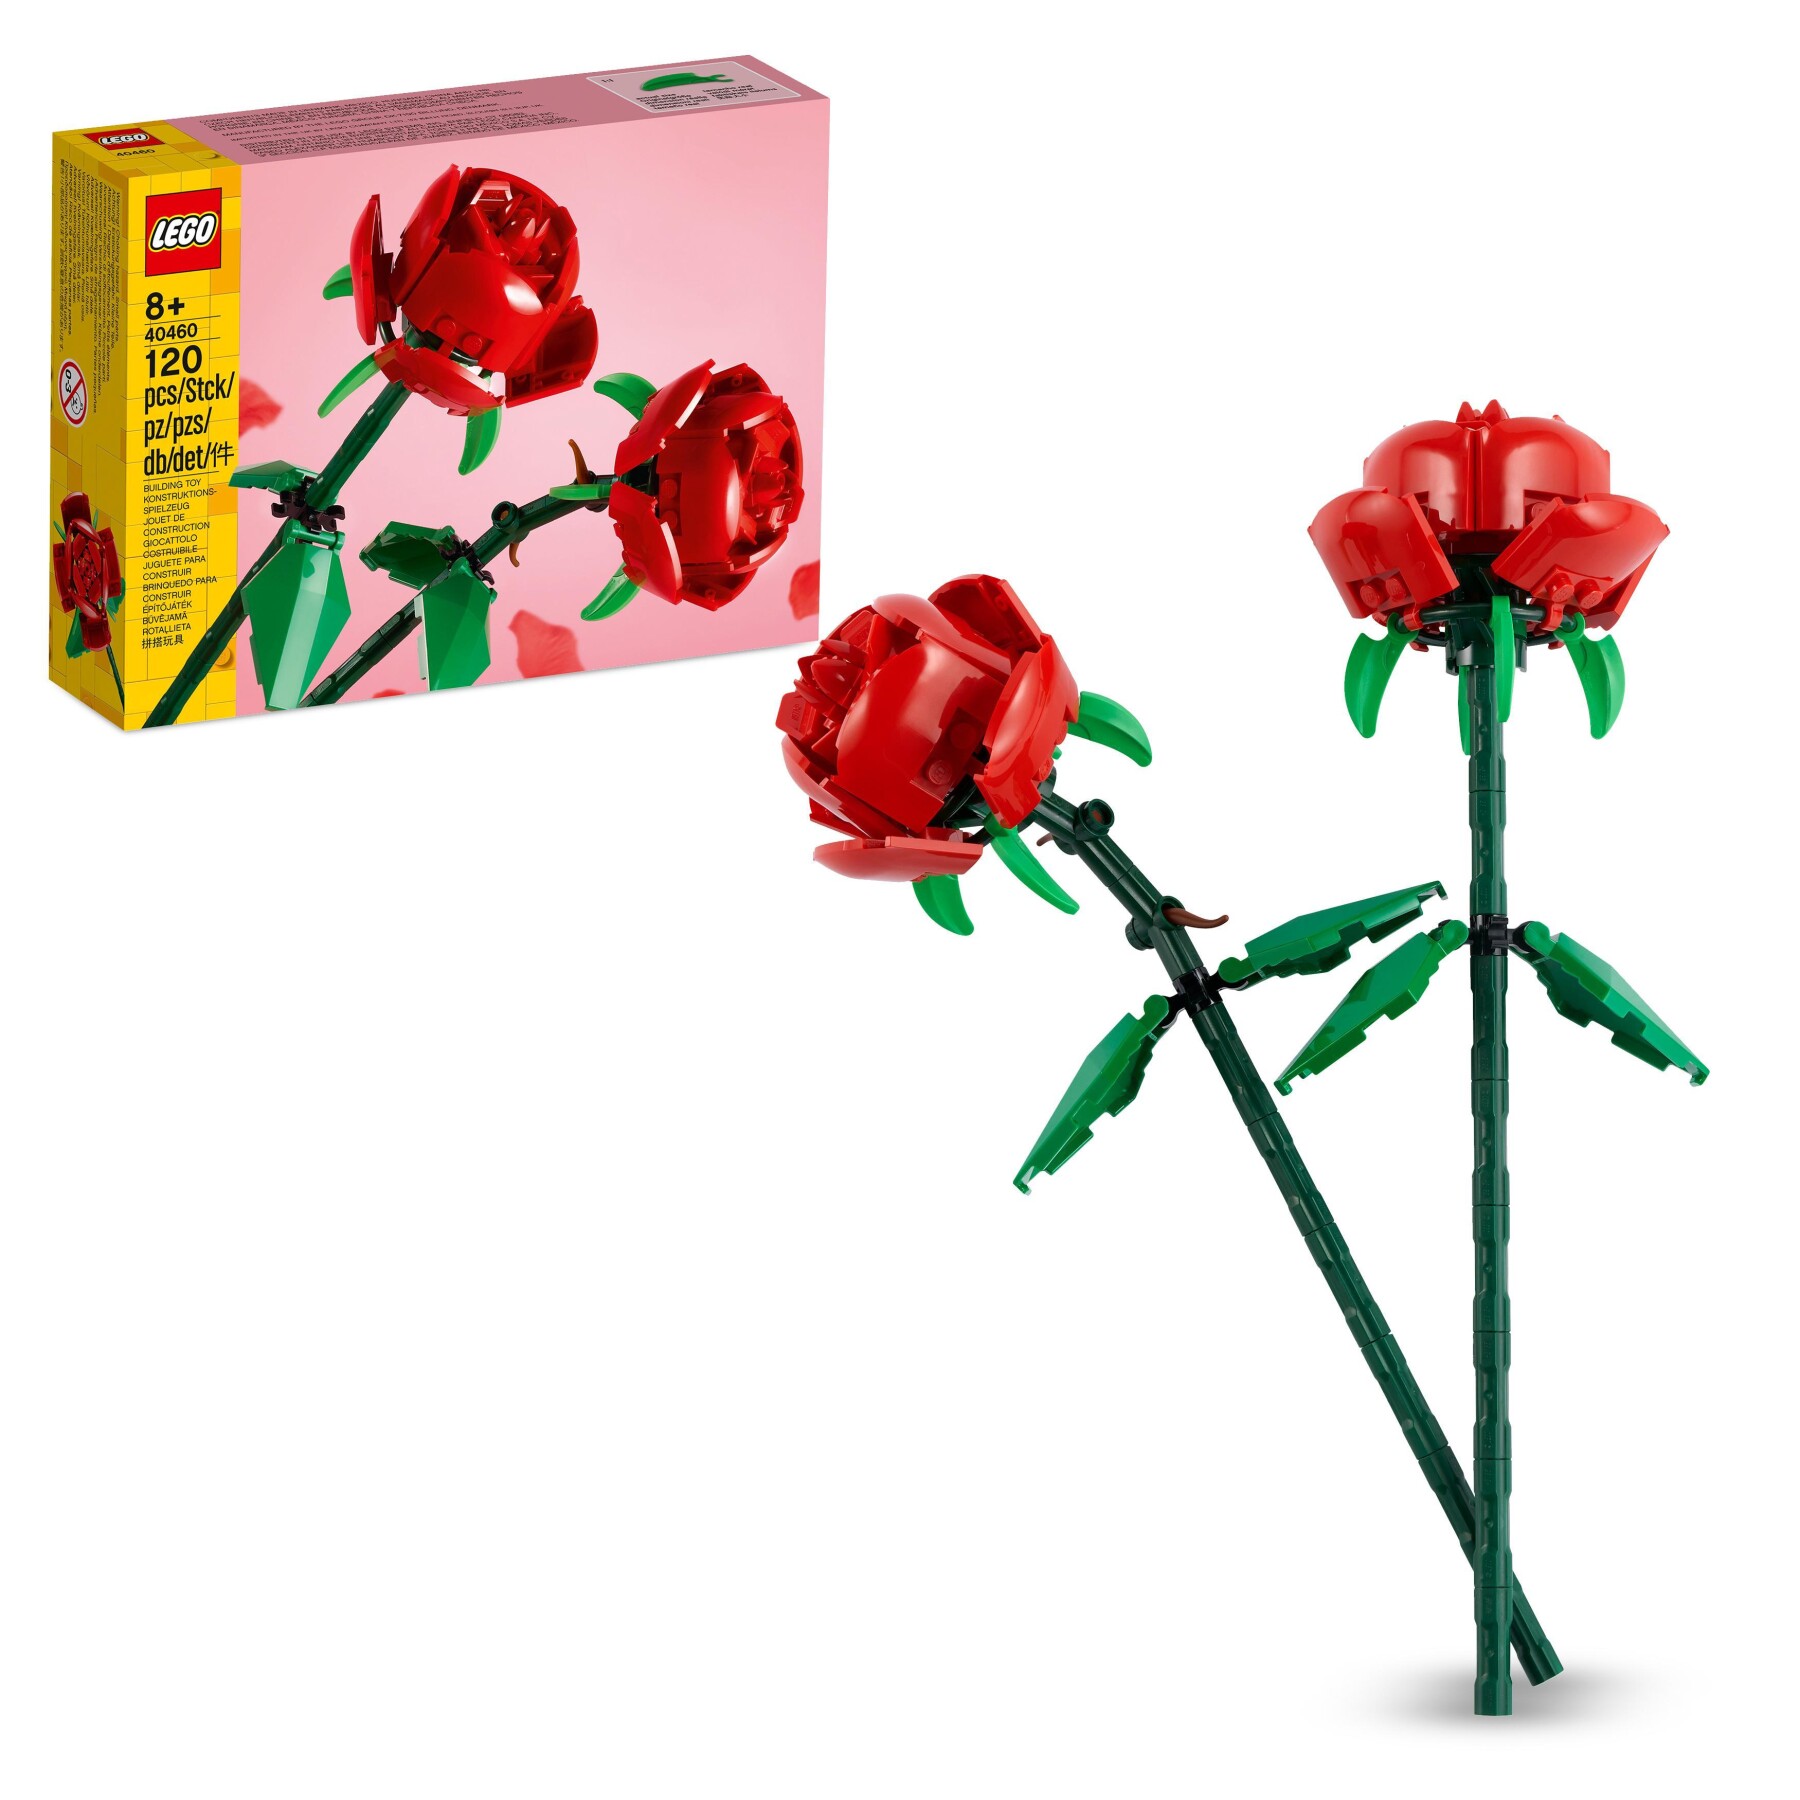 Lego creator 40460 rose set fiori finti compatibile con bouquet di fiori artificiali, regalo di san valentino per lei o lui - LEGO CREATOR